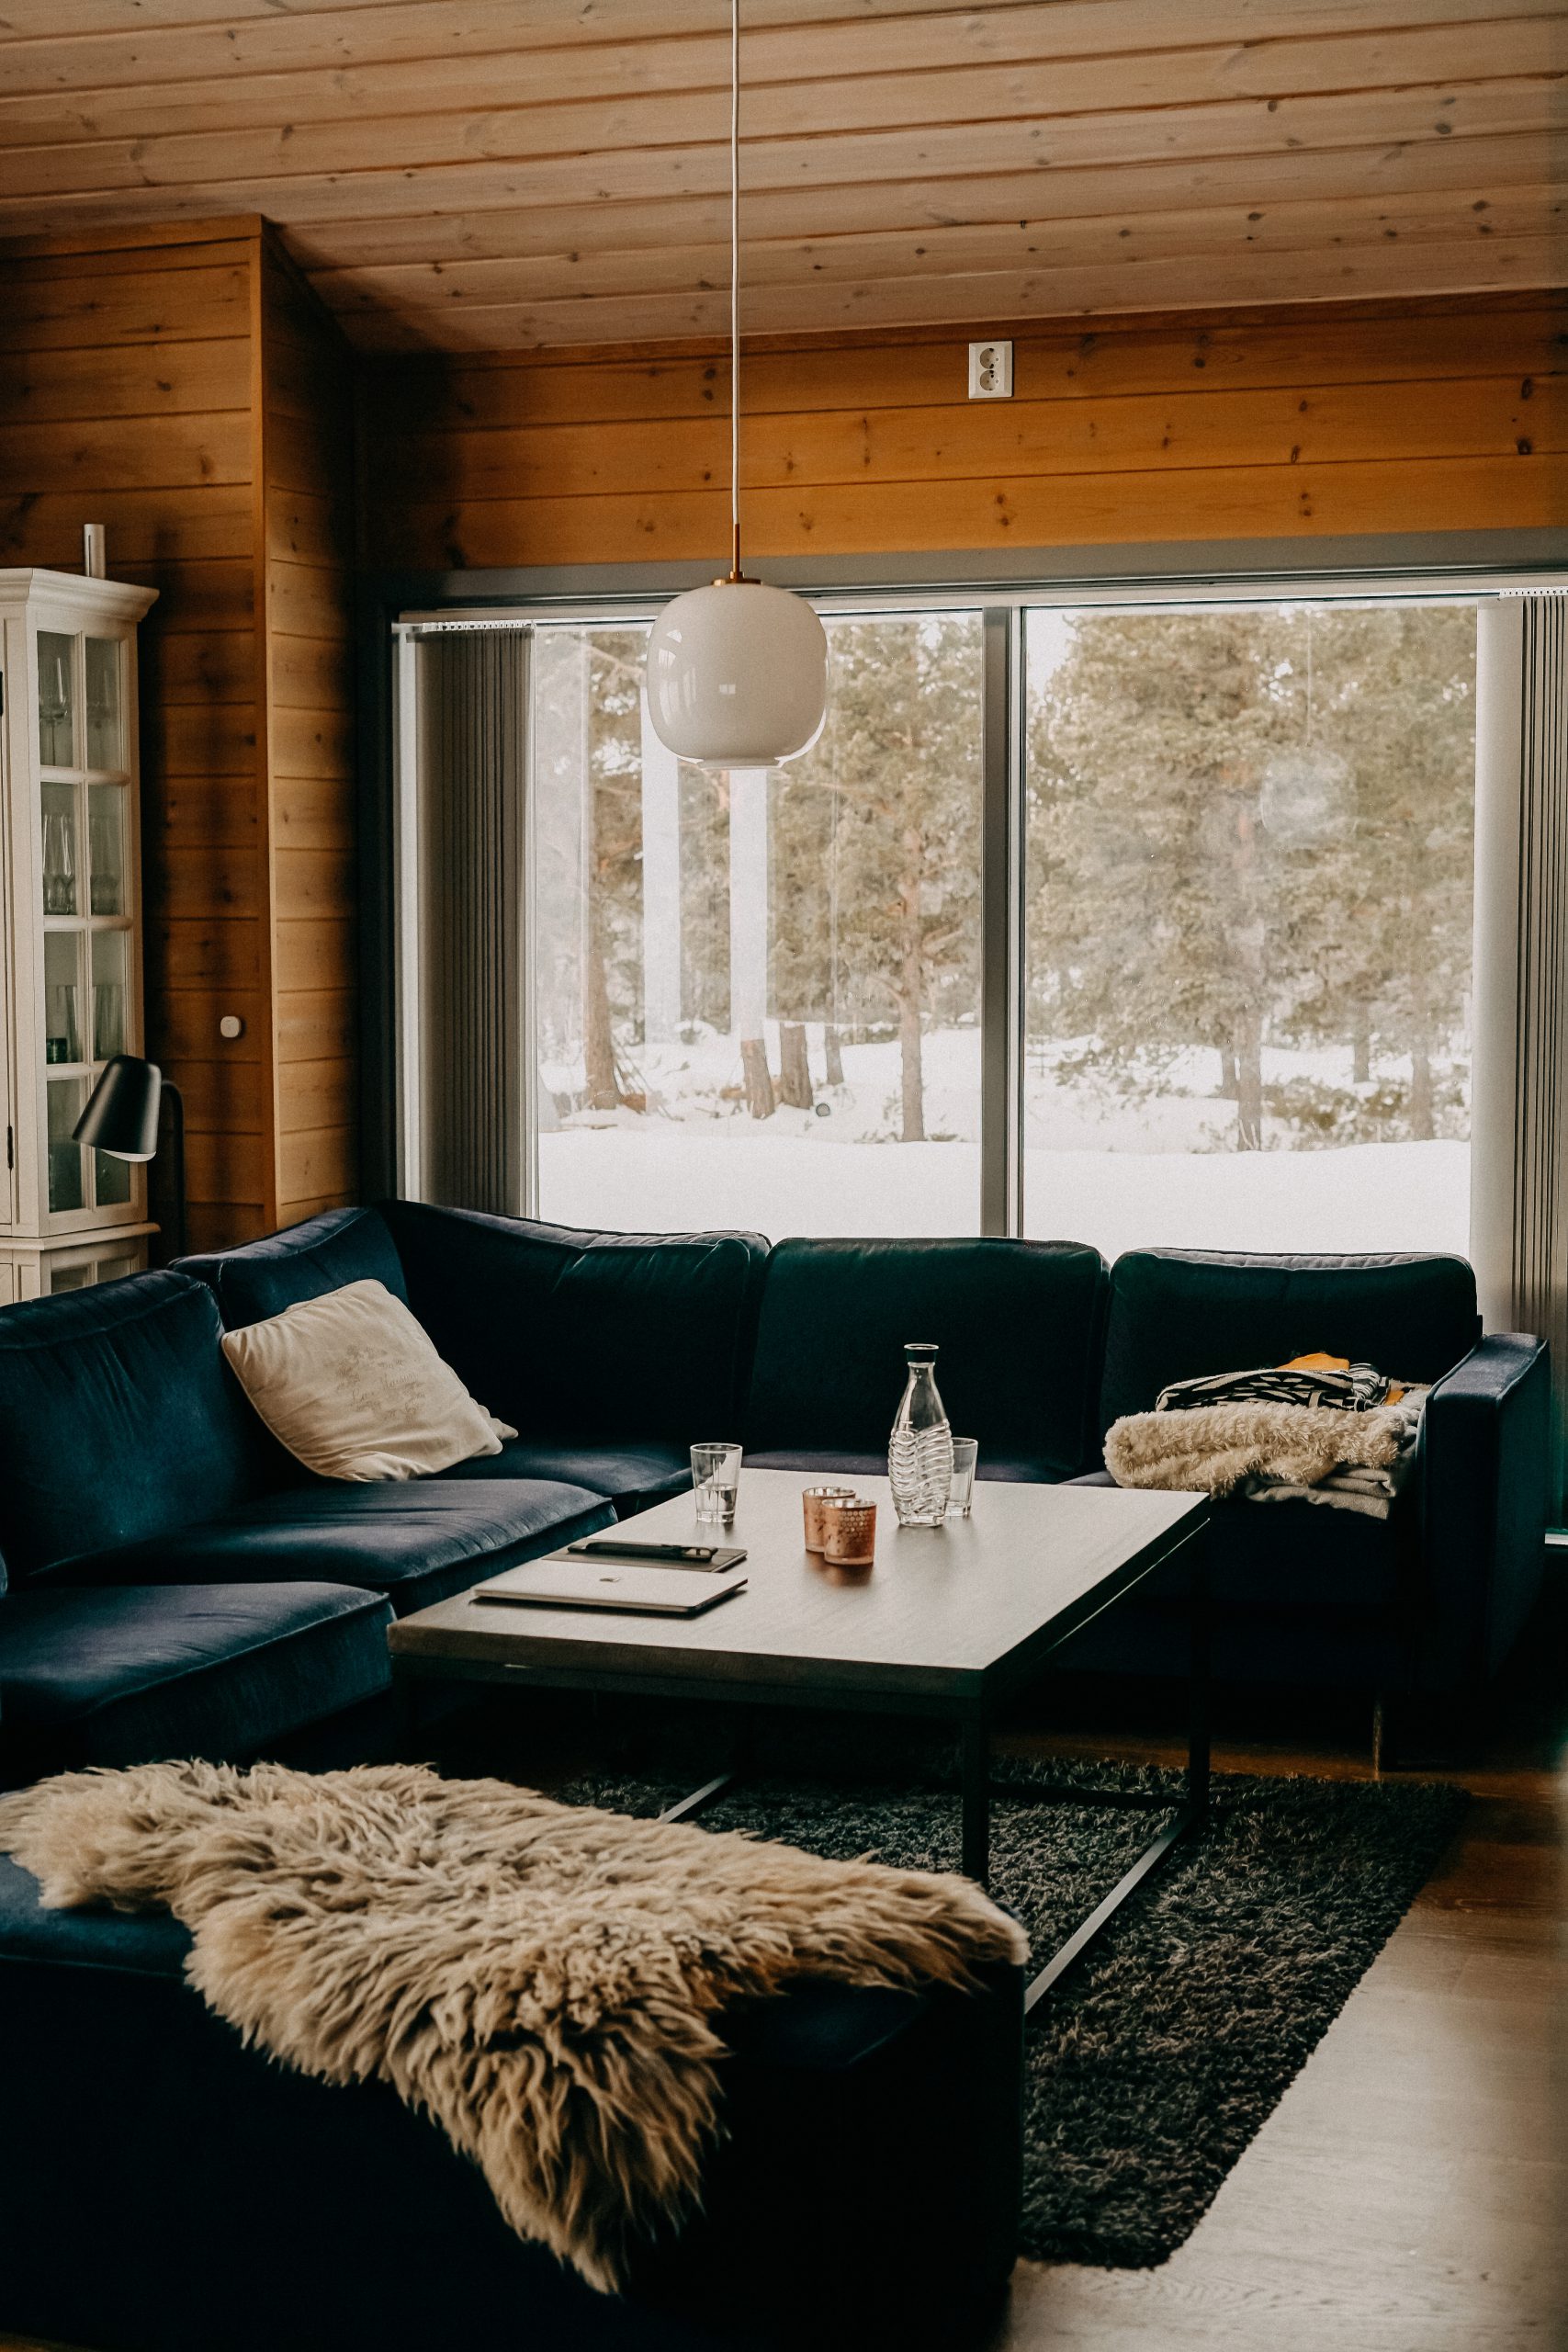 Airbnb Hütte Unterkunft Norwegen Jotunheimen Nationalpark Holzhütte Norwegen Winterurlaub Winterroute Auto Reiseblog Reisen mit Hund Tipps 3